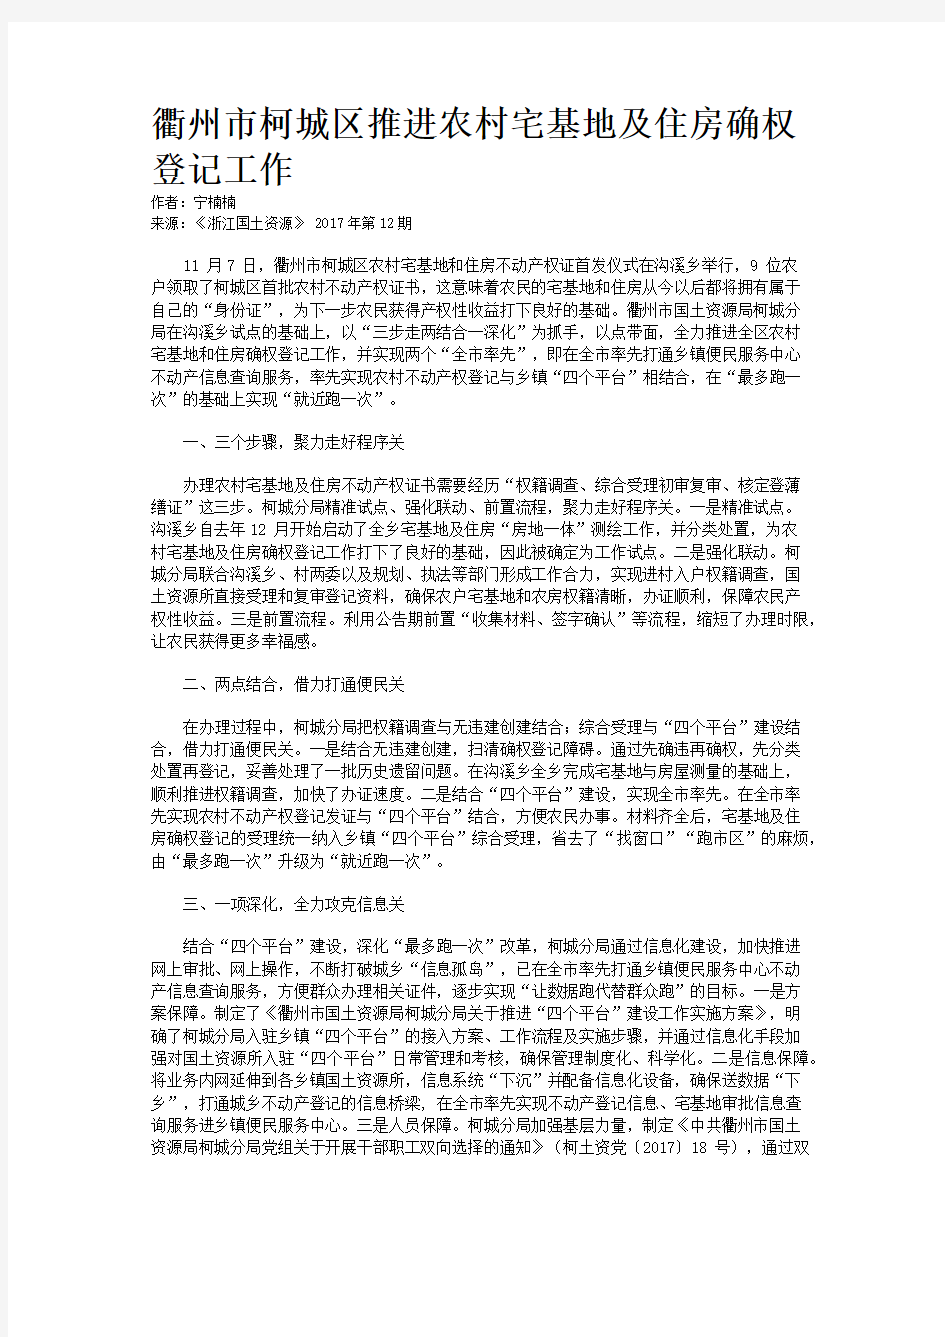 衢州市柯城区推进农村宅基地及住房确权登记工作